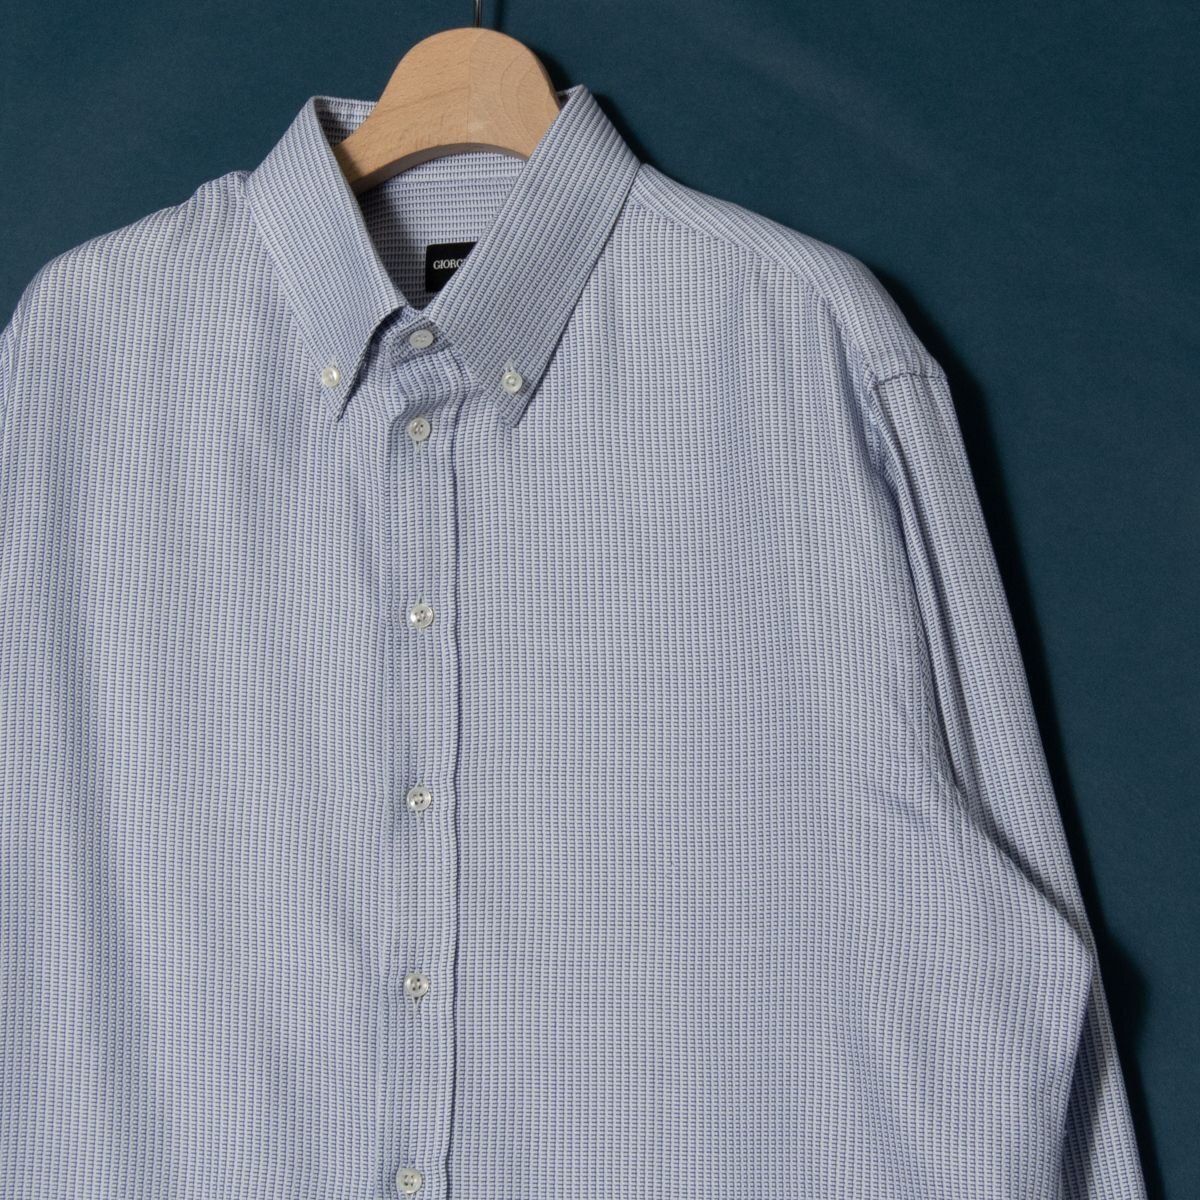 [1 иен старт ]GIORGIO ARMANIjoru geo Armani длинный рукав кнопка down рубашка tops хлопок 100% высокий бренд общий рисунок белый × темно-синий 43 Италия производства 